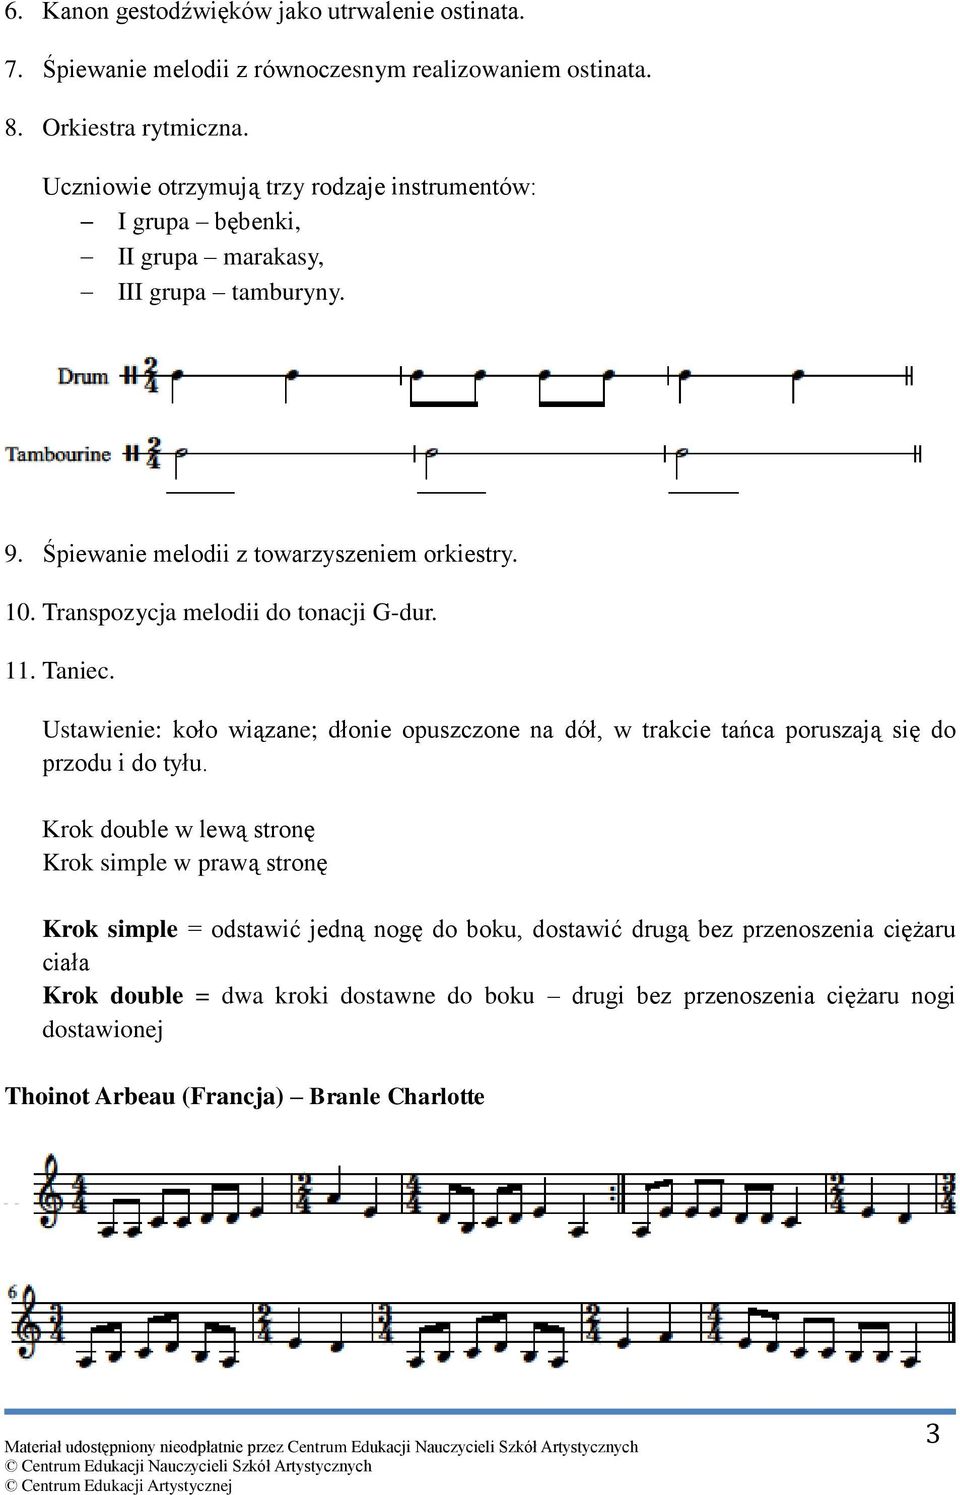 Transpozycja melodii do tonacji G-dur. 11. Taniec. Ustawienie: koło wiązane; dłonie opuszczone na dół, w trakcie tańca poruszają się do przodu i do tyłu.